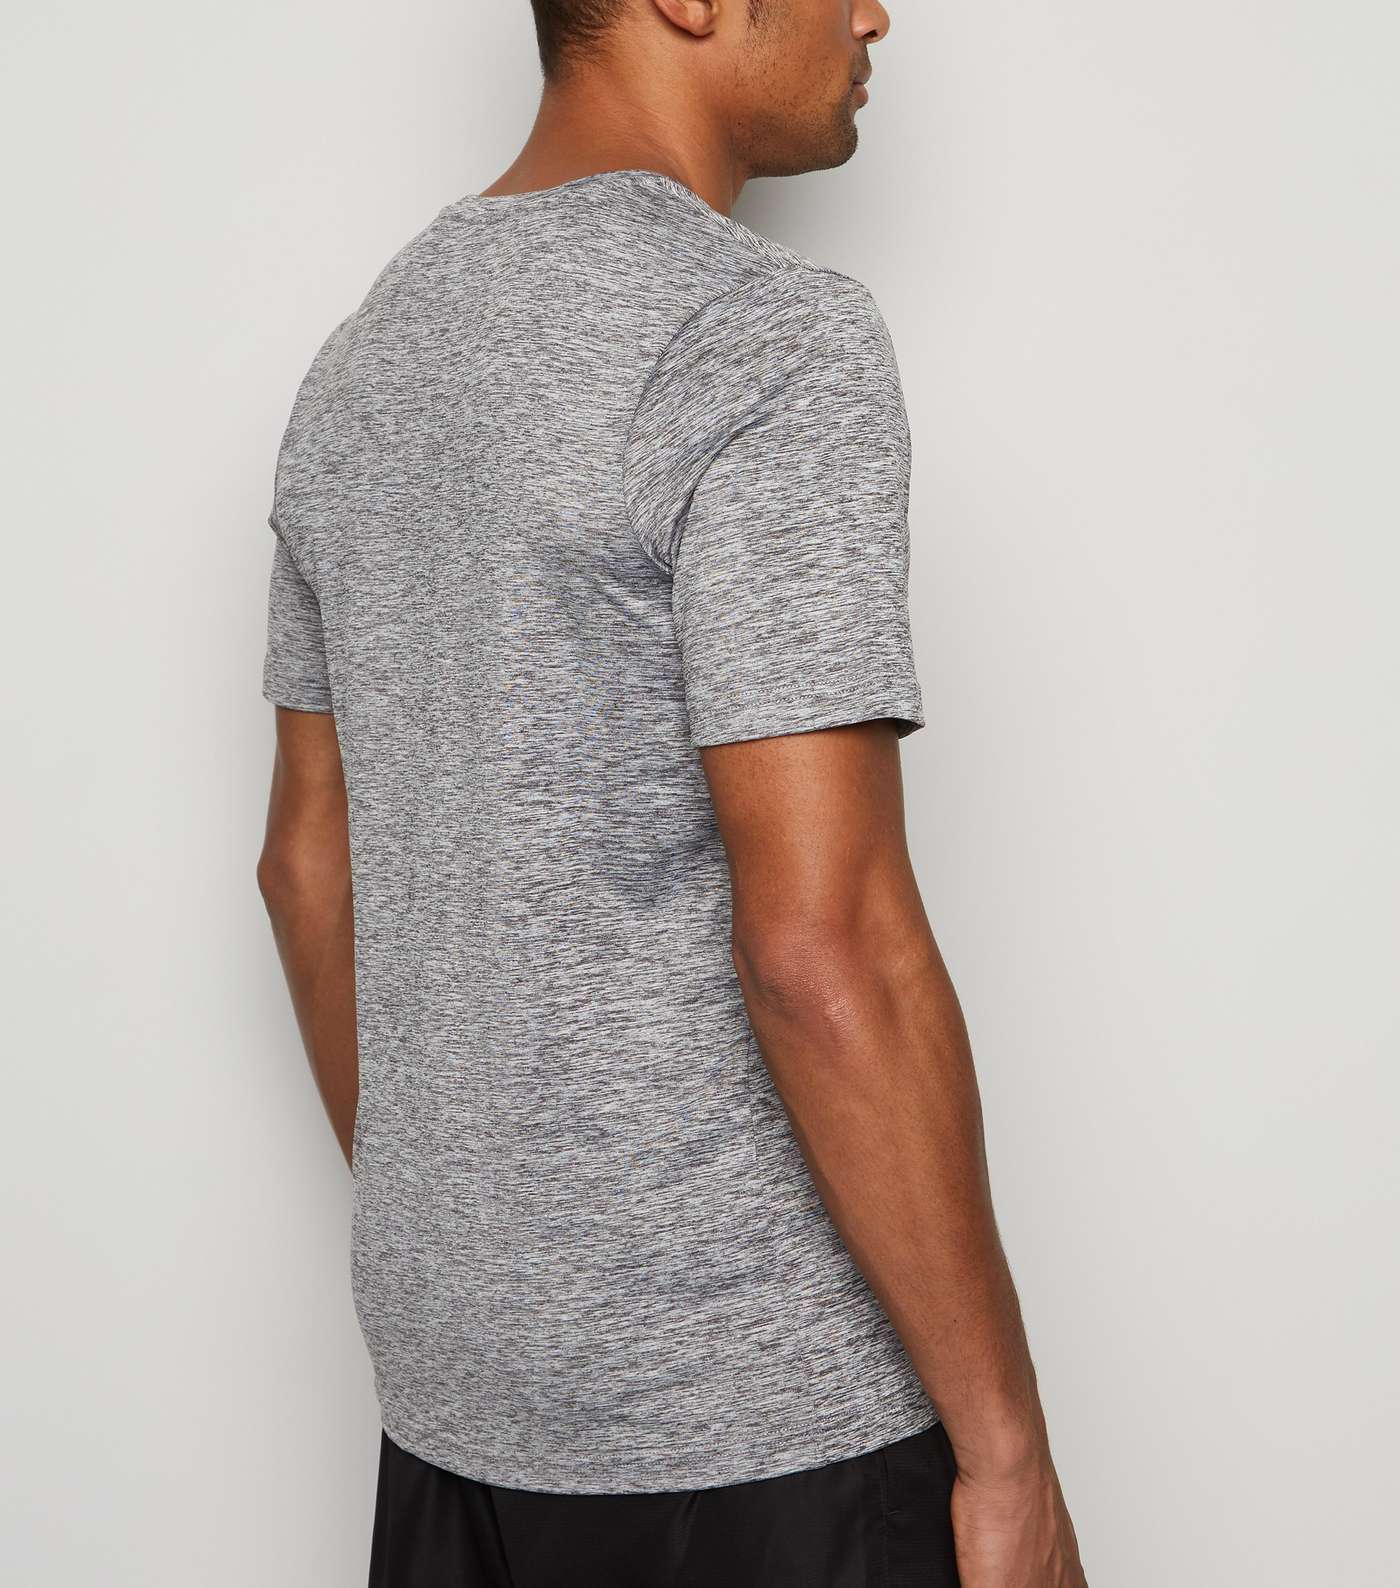 GymPro Pale Grey Mesh Panel T-Shirt Image 3